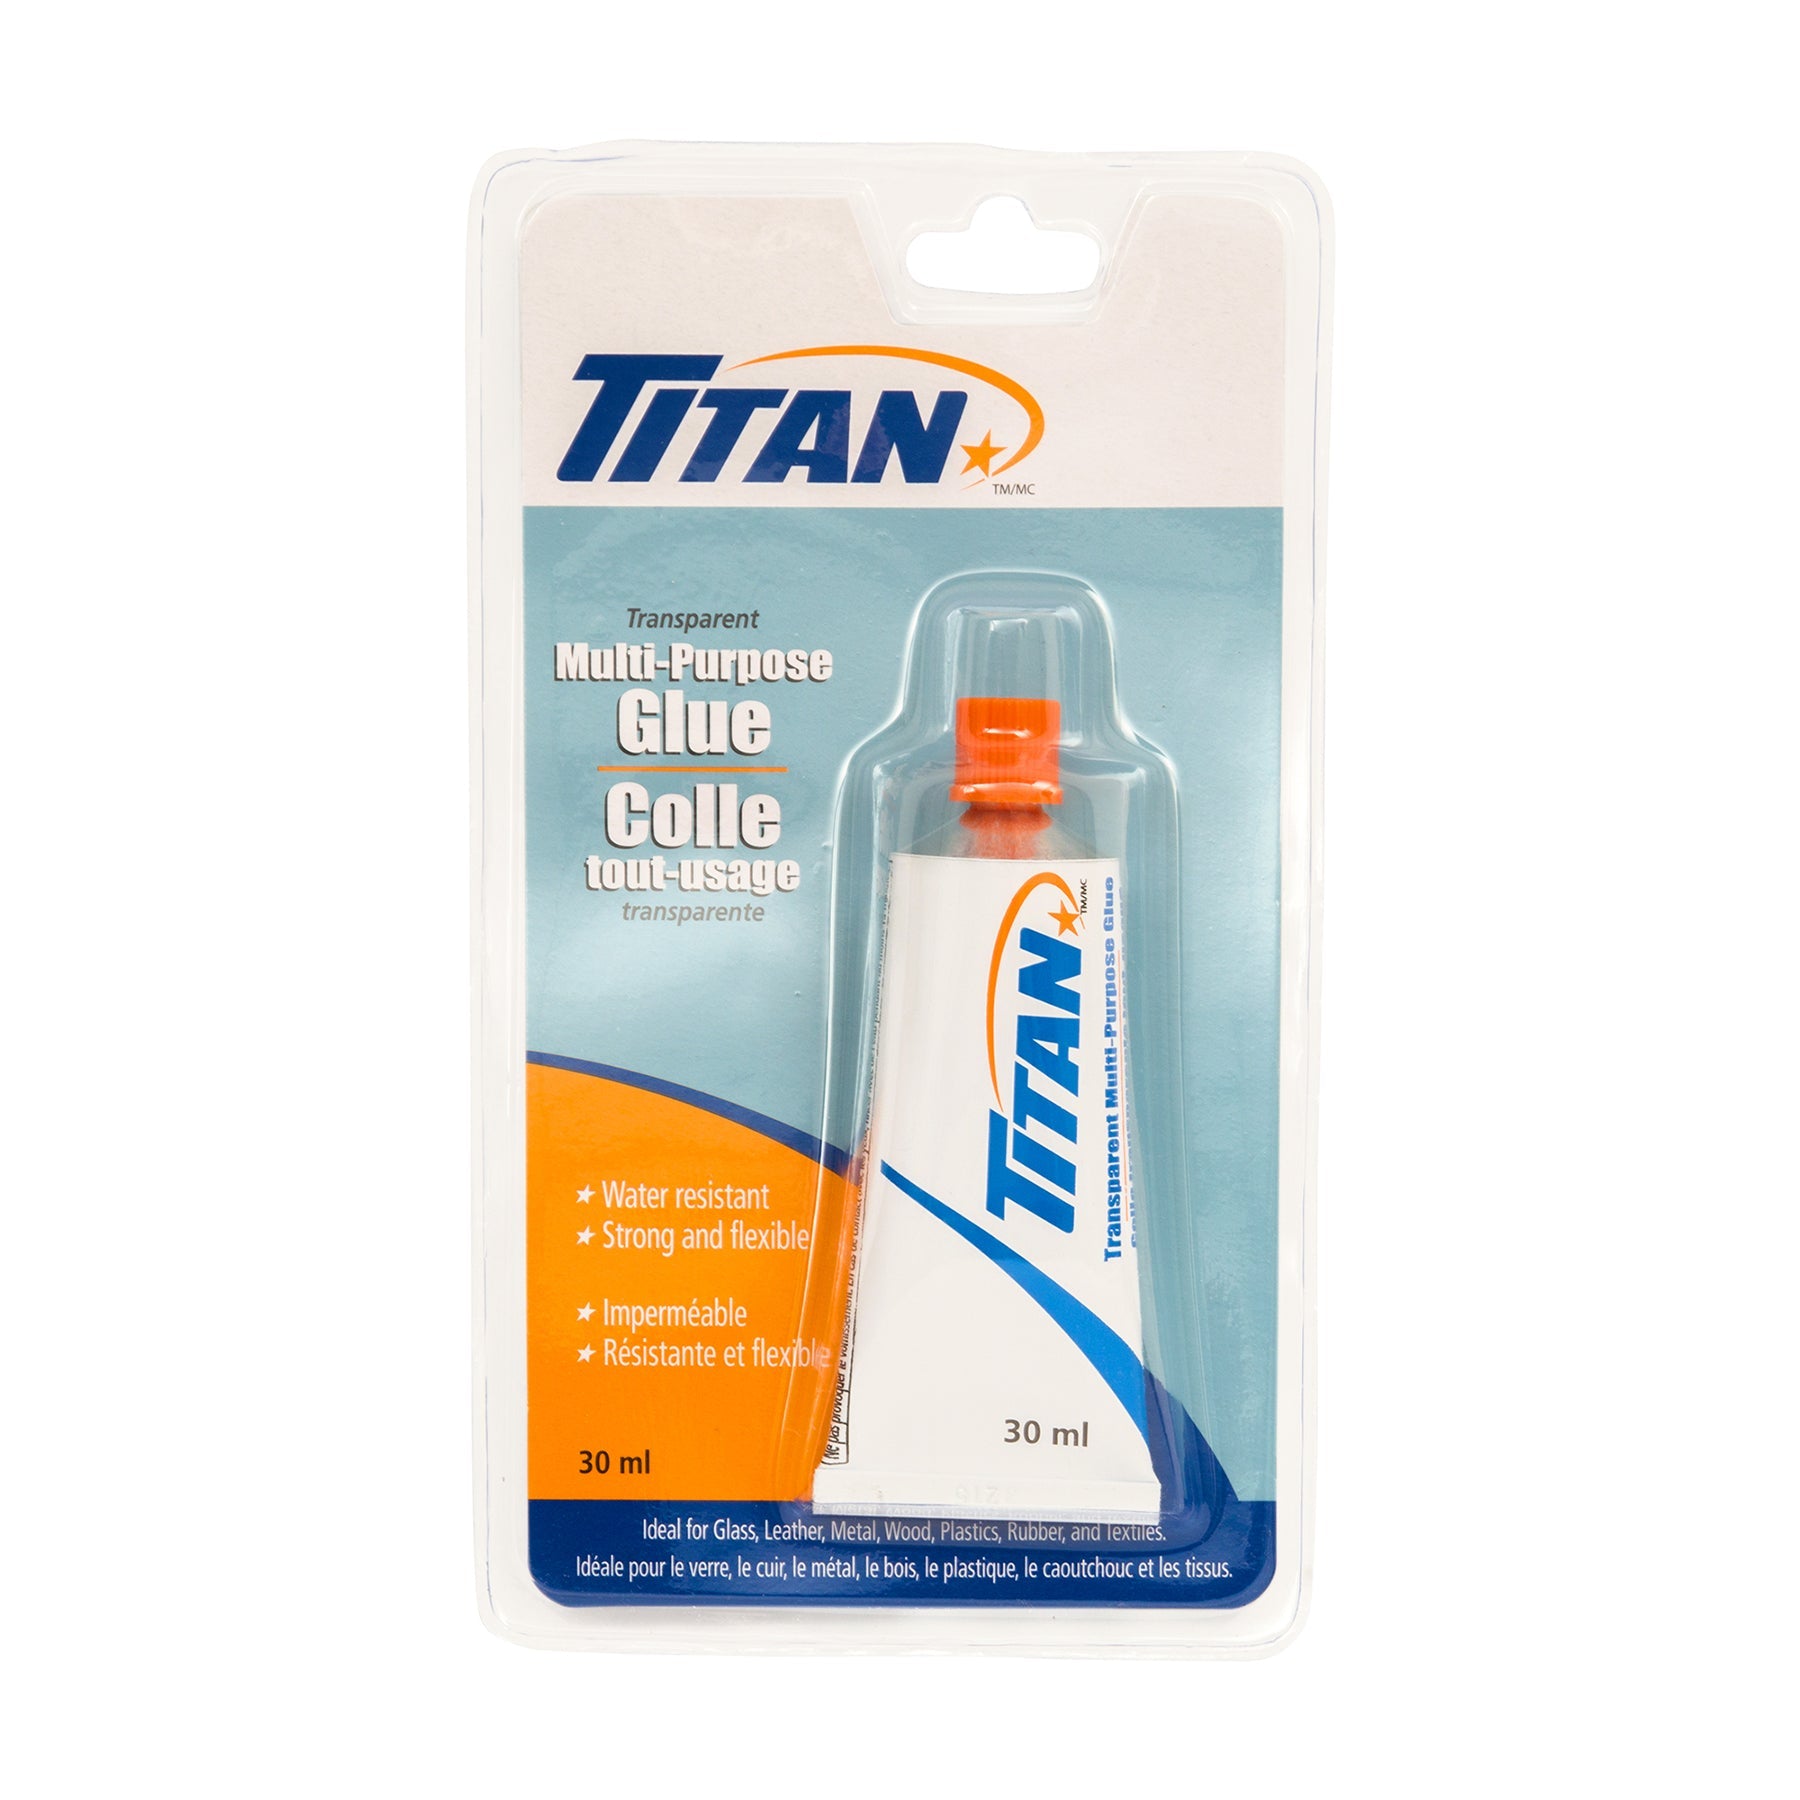 Titan Multi-Purpose Transparent Glue 1oz